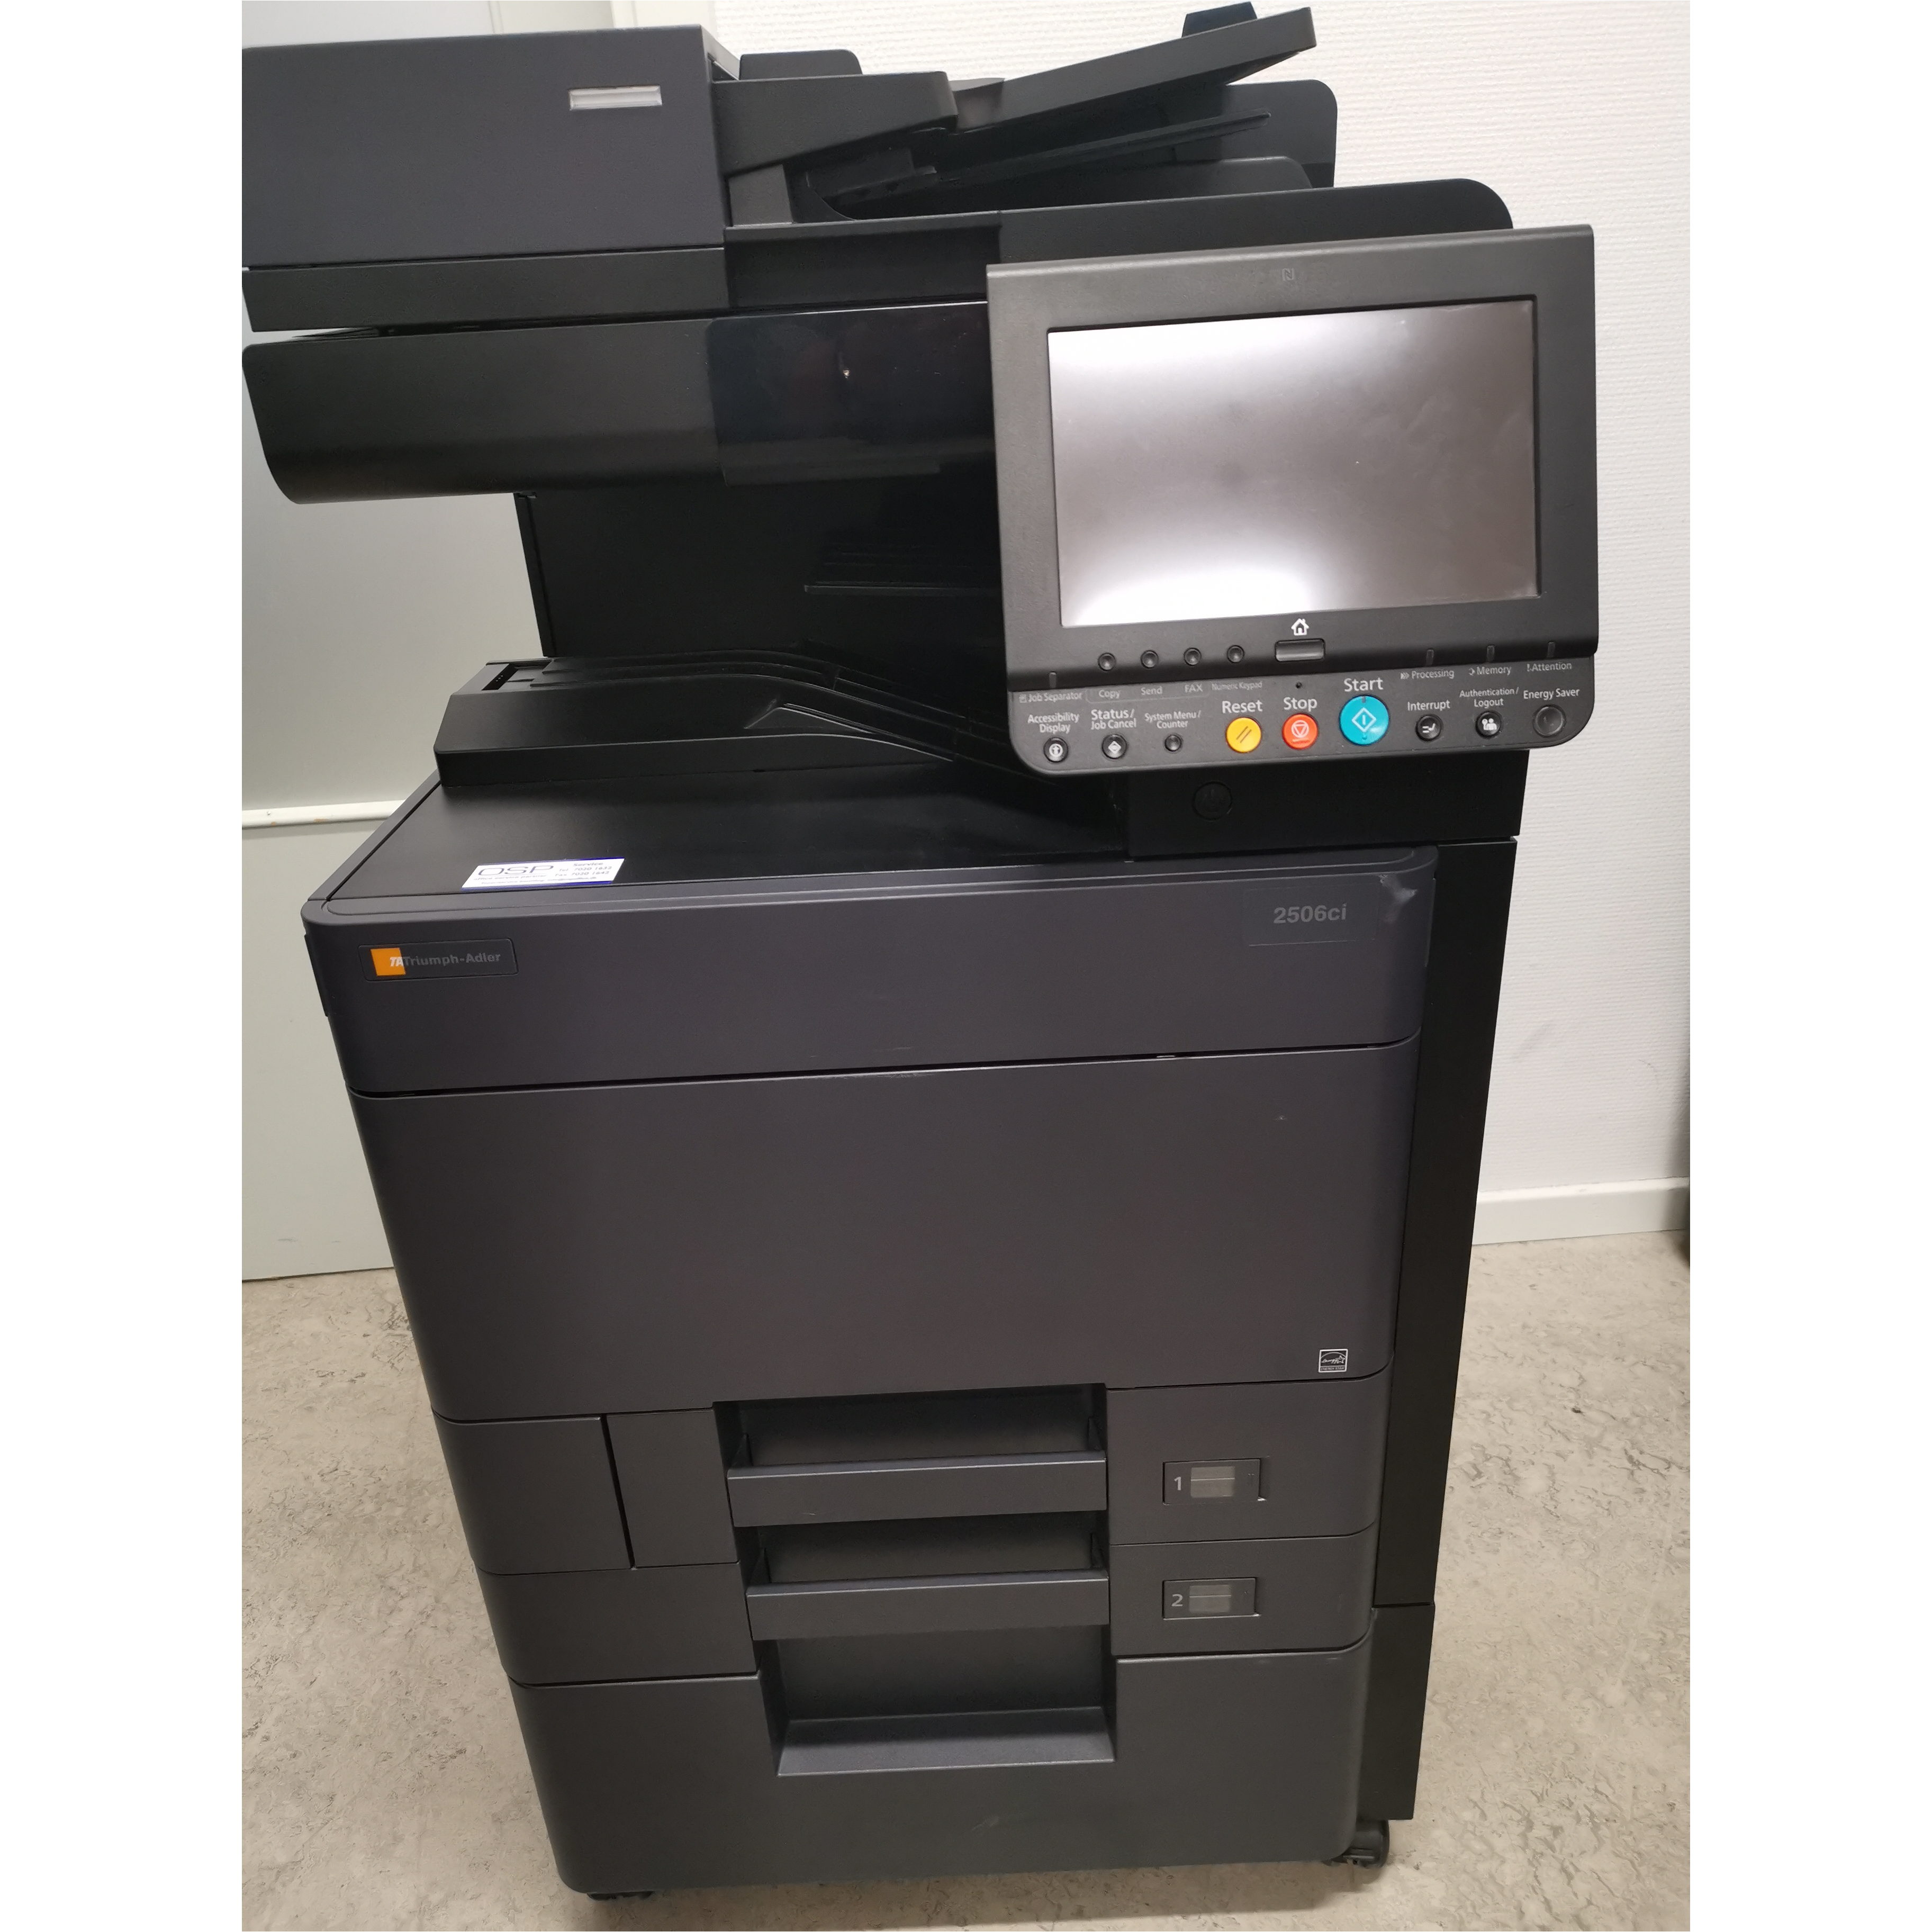 Ligegyldighed I første omgang partner TA A3 farvekopimaskine/printer 2506ci | Printkontorshop